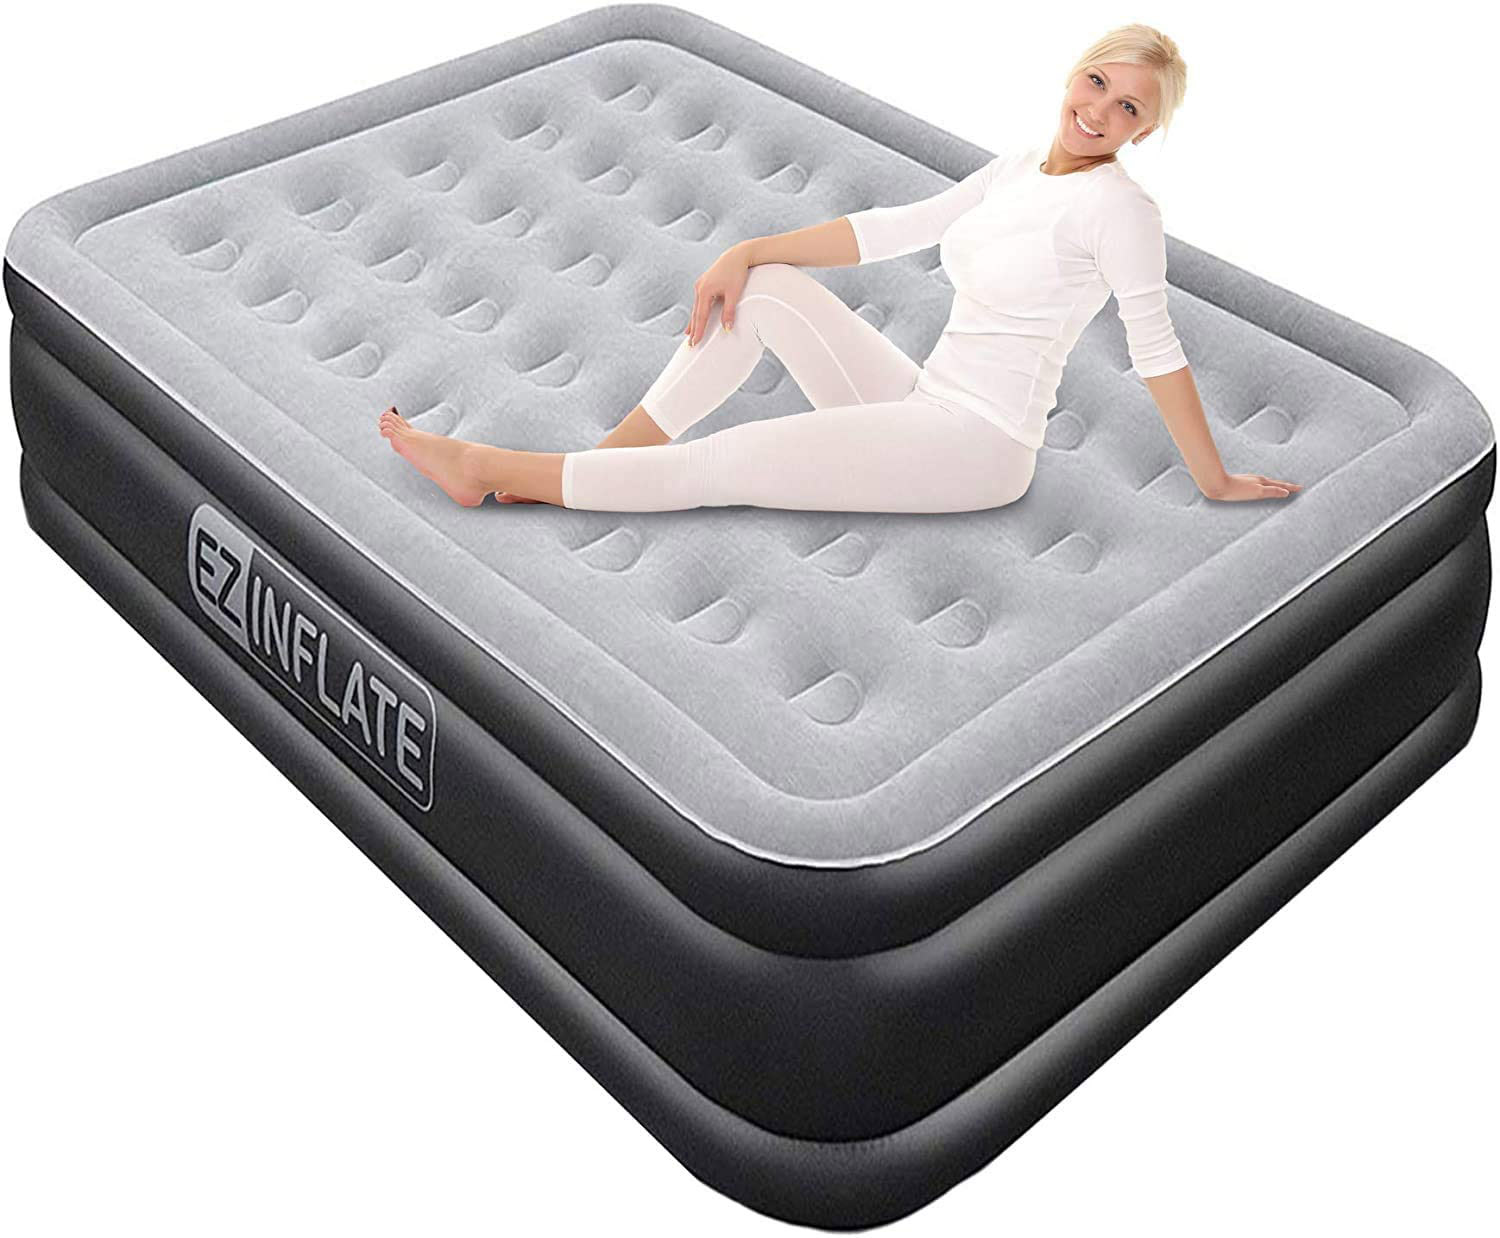 air mattress vs foam mattress camping